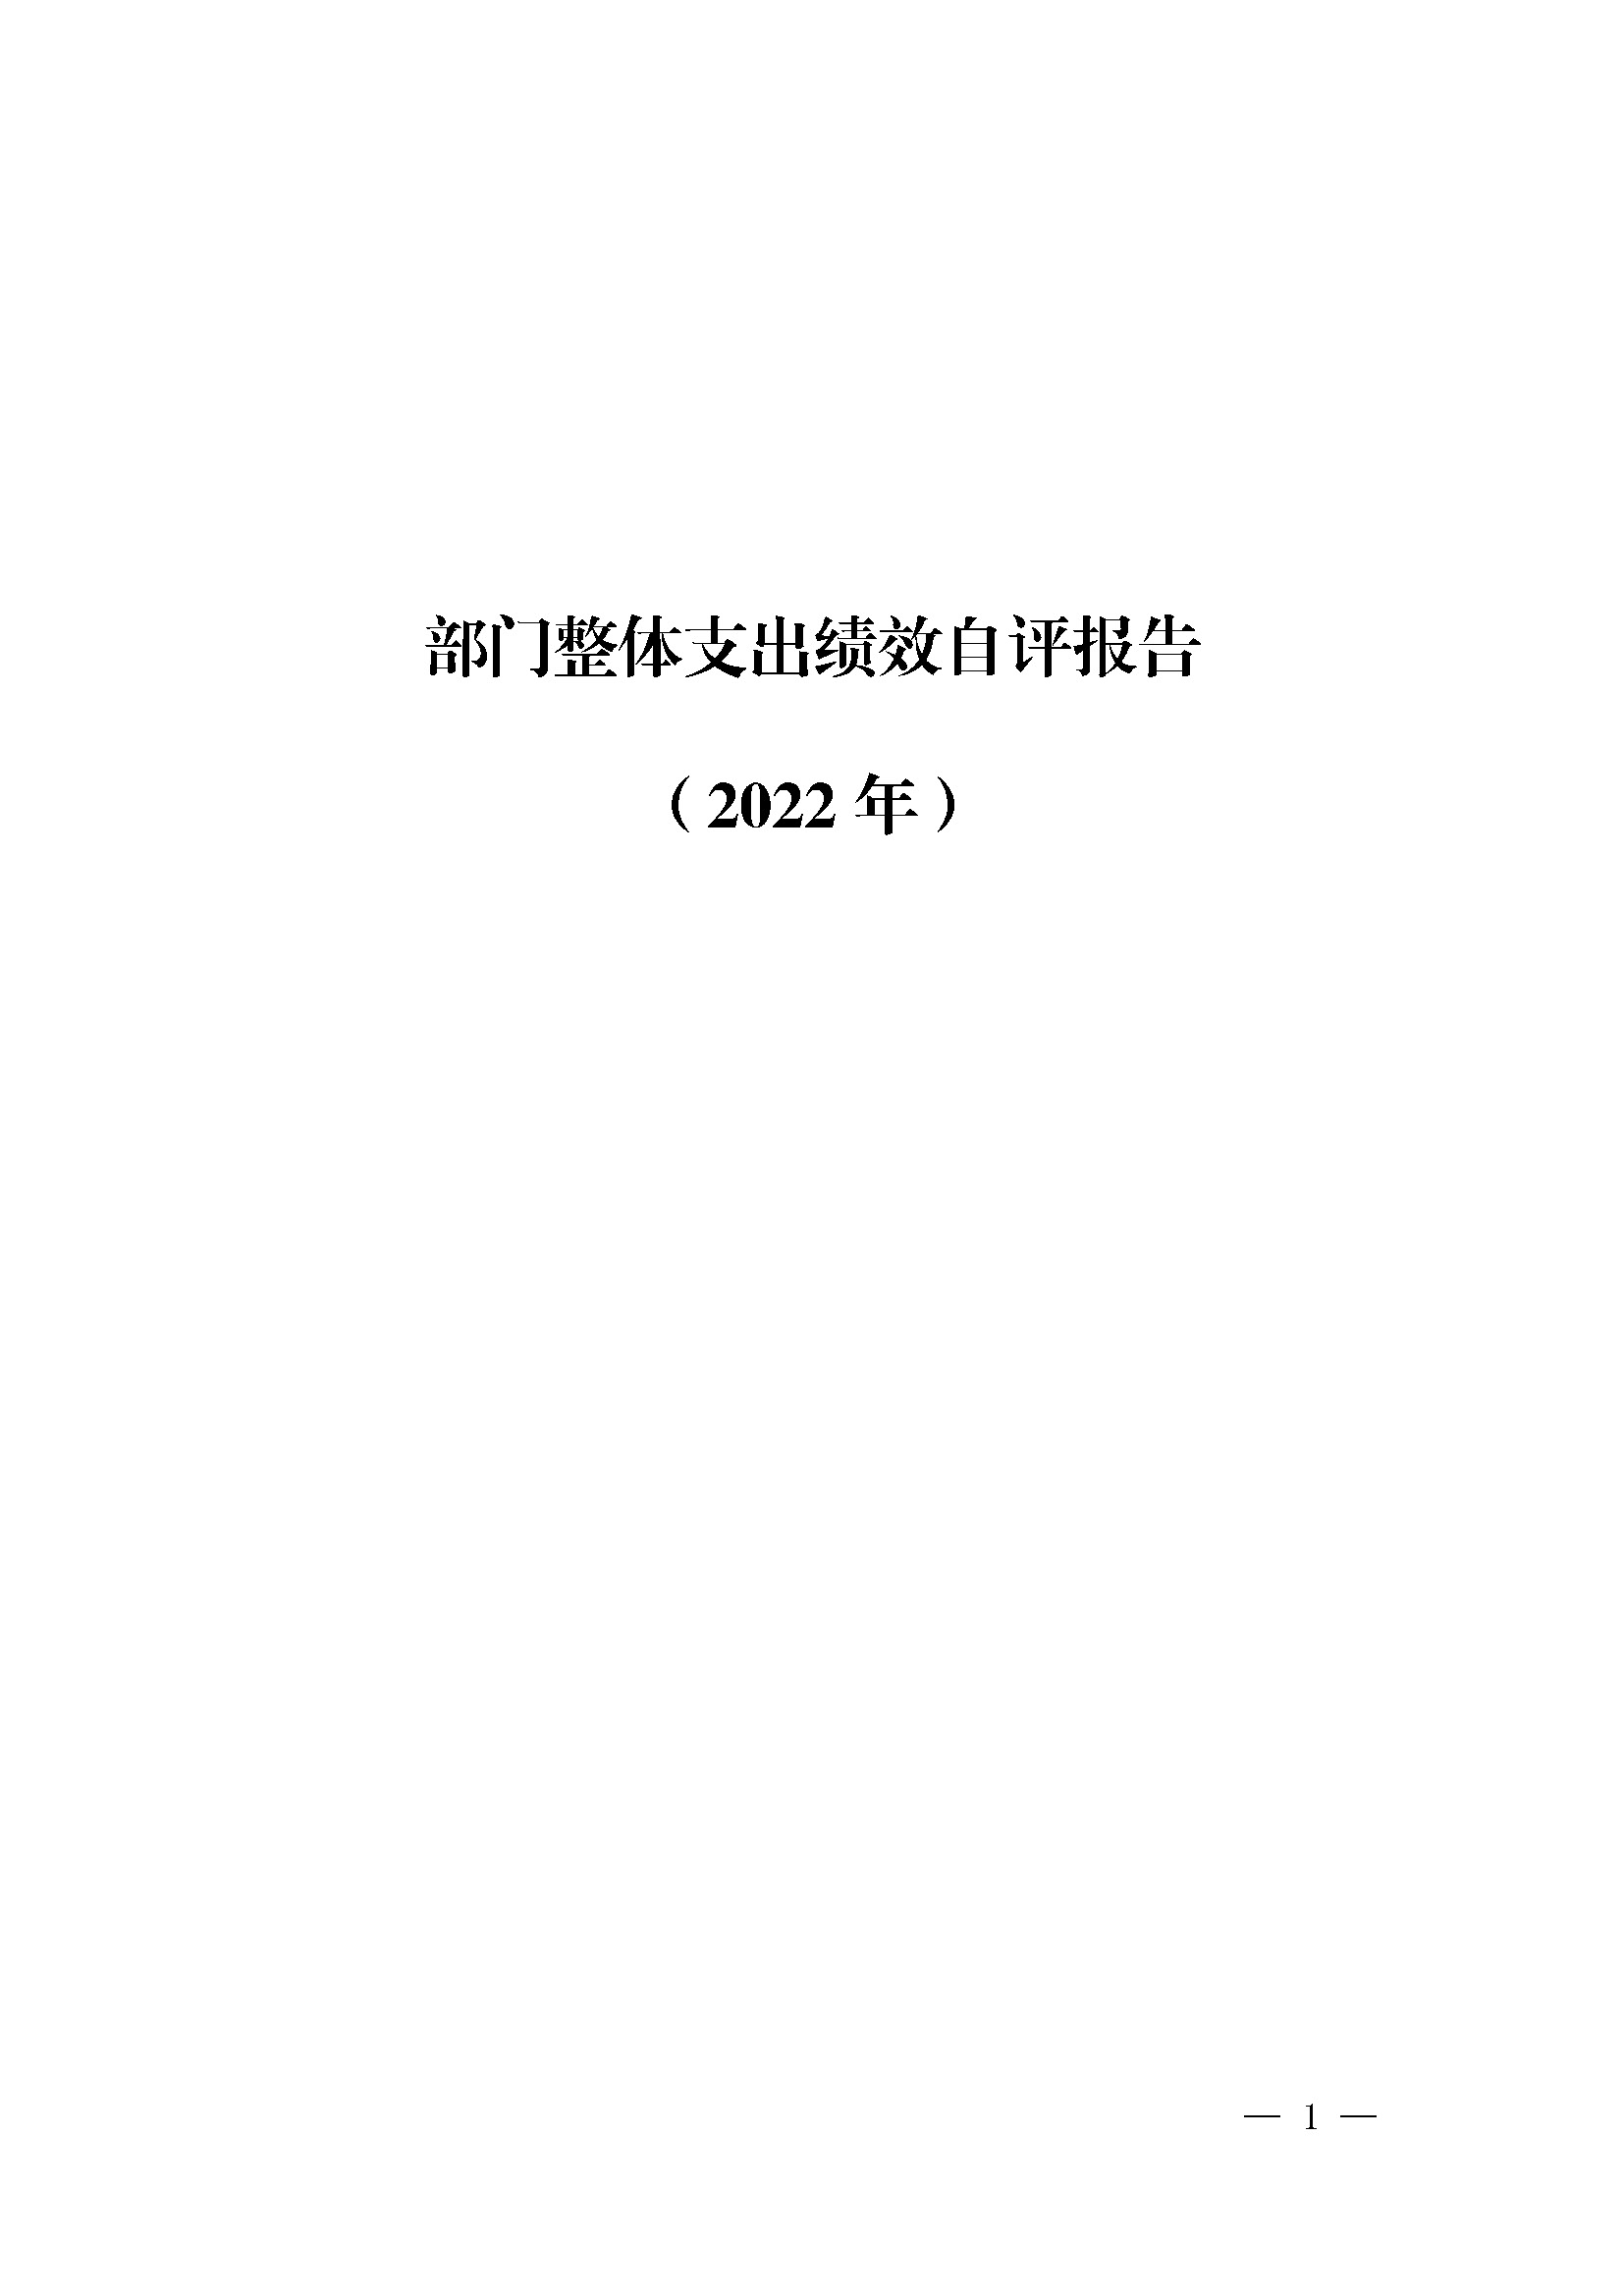 广东省司法厅2022年度部门整体支出绩效自评报告_页面_01.jpg